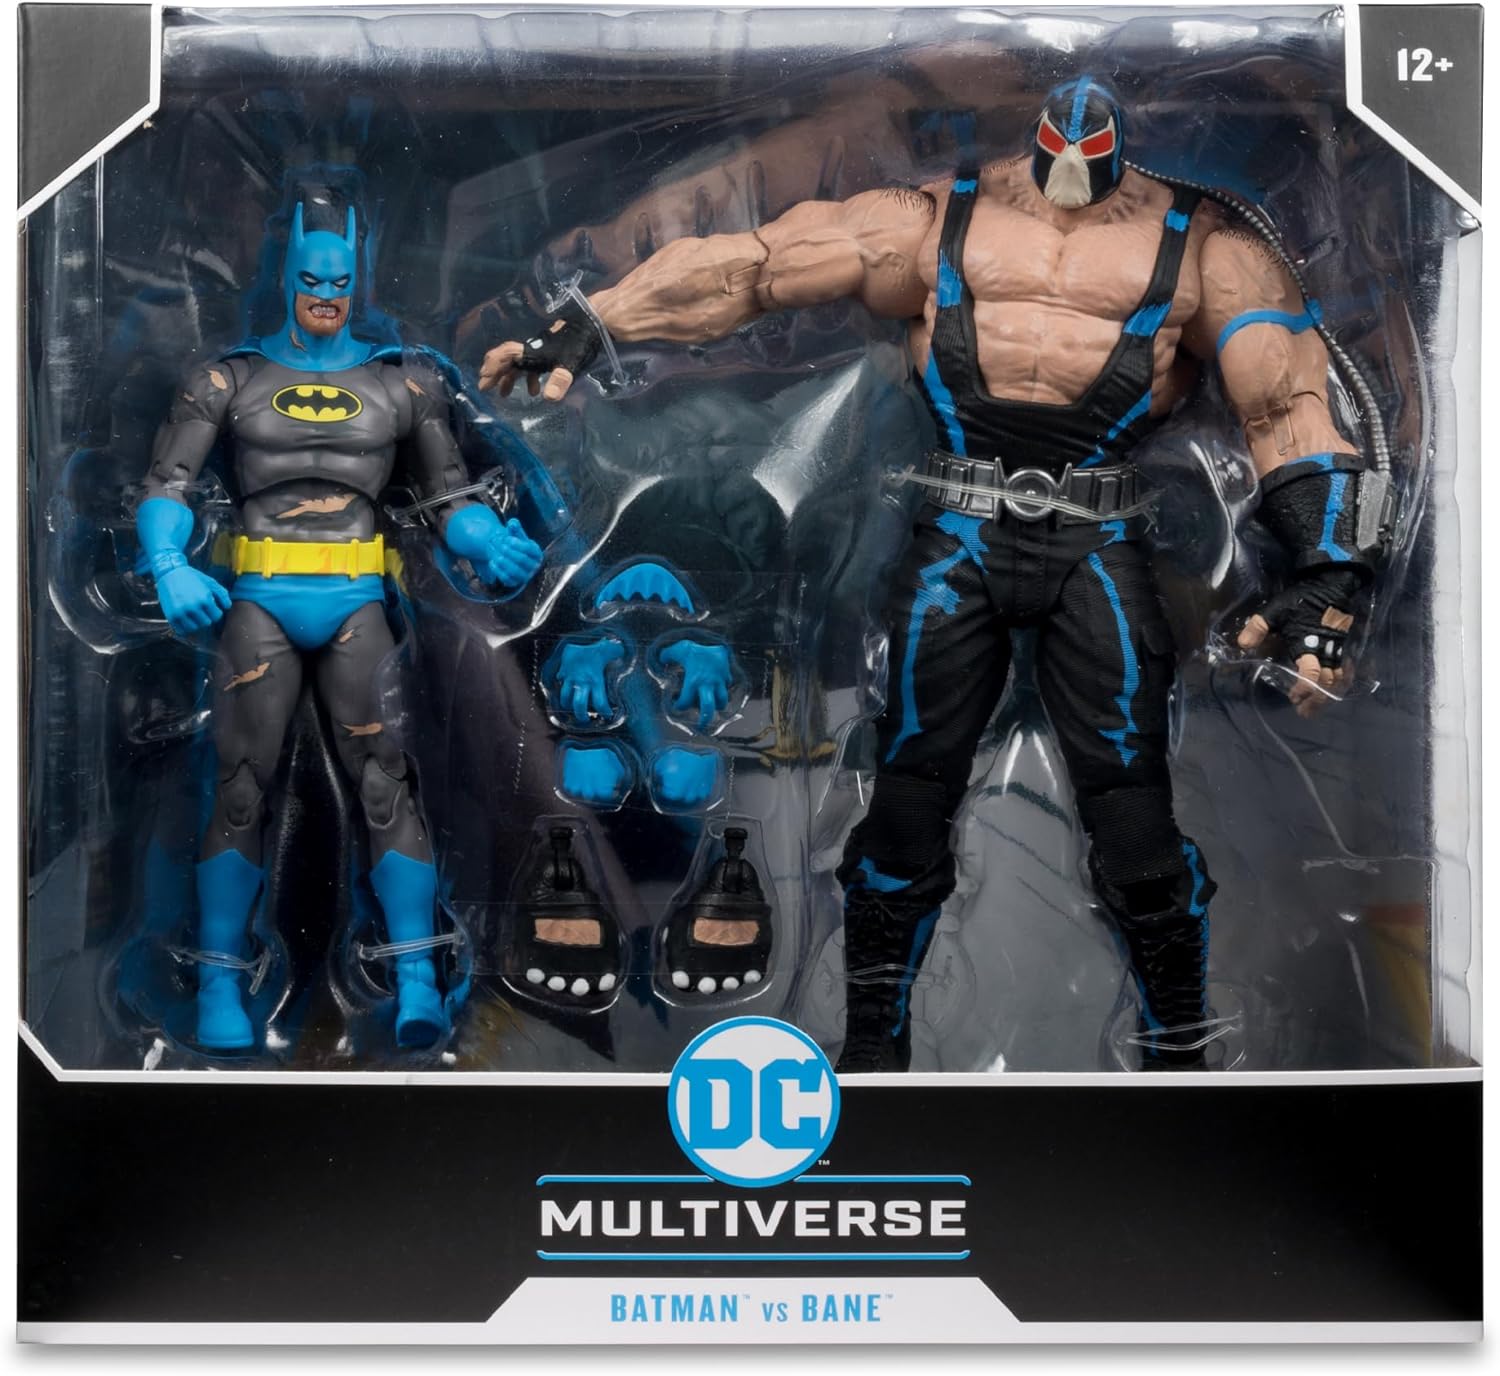 McFarlane DC Multiverse BATMAN VS BANE 2PKの画像